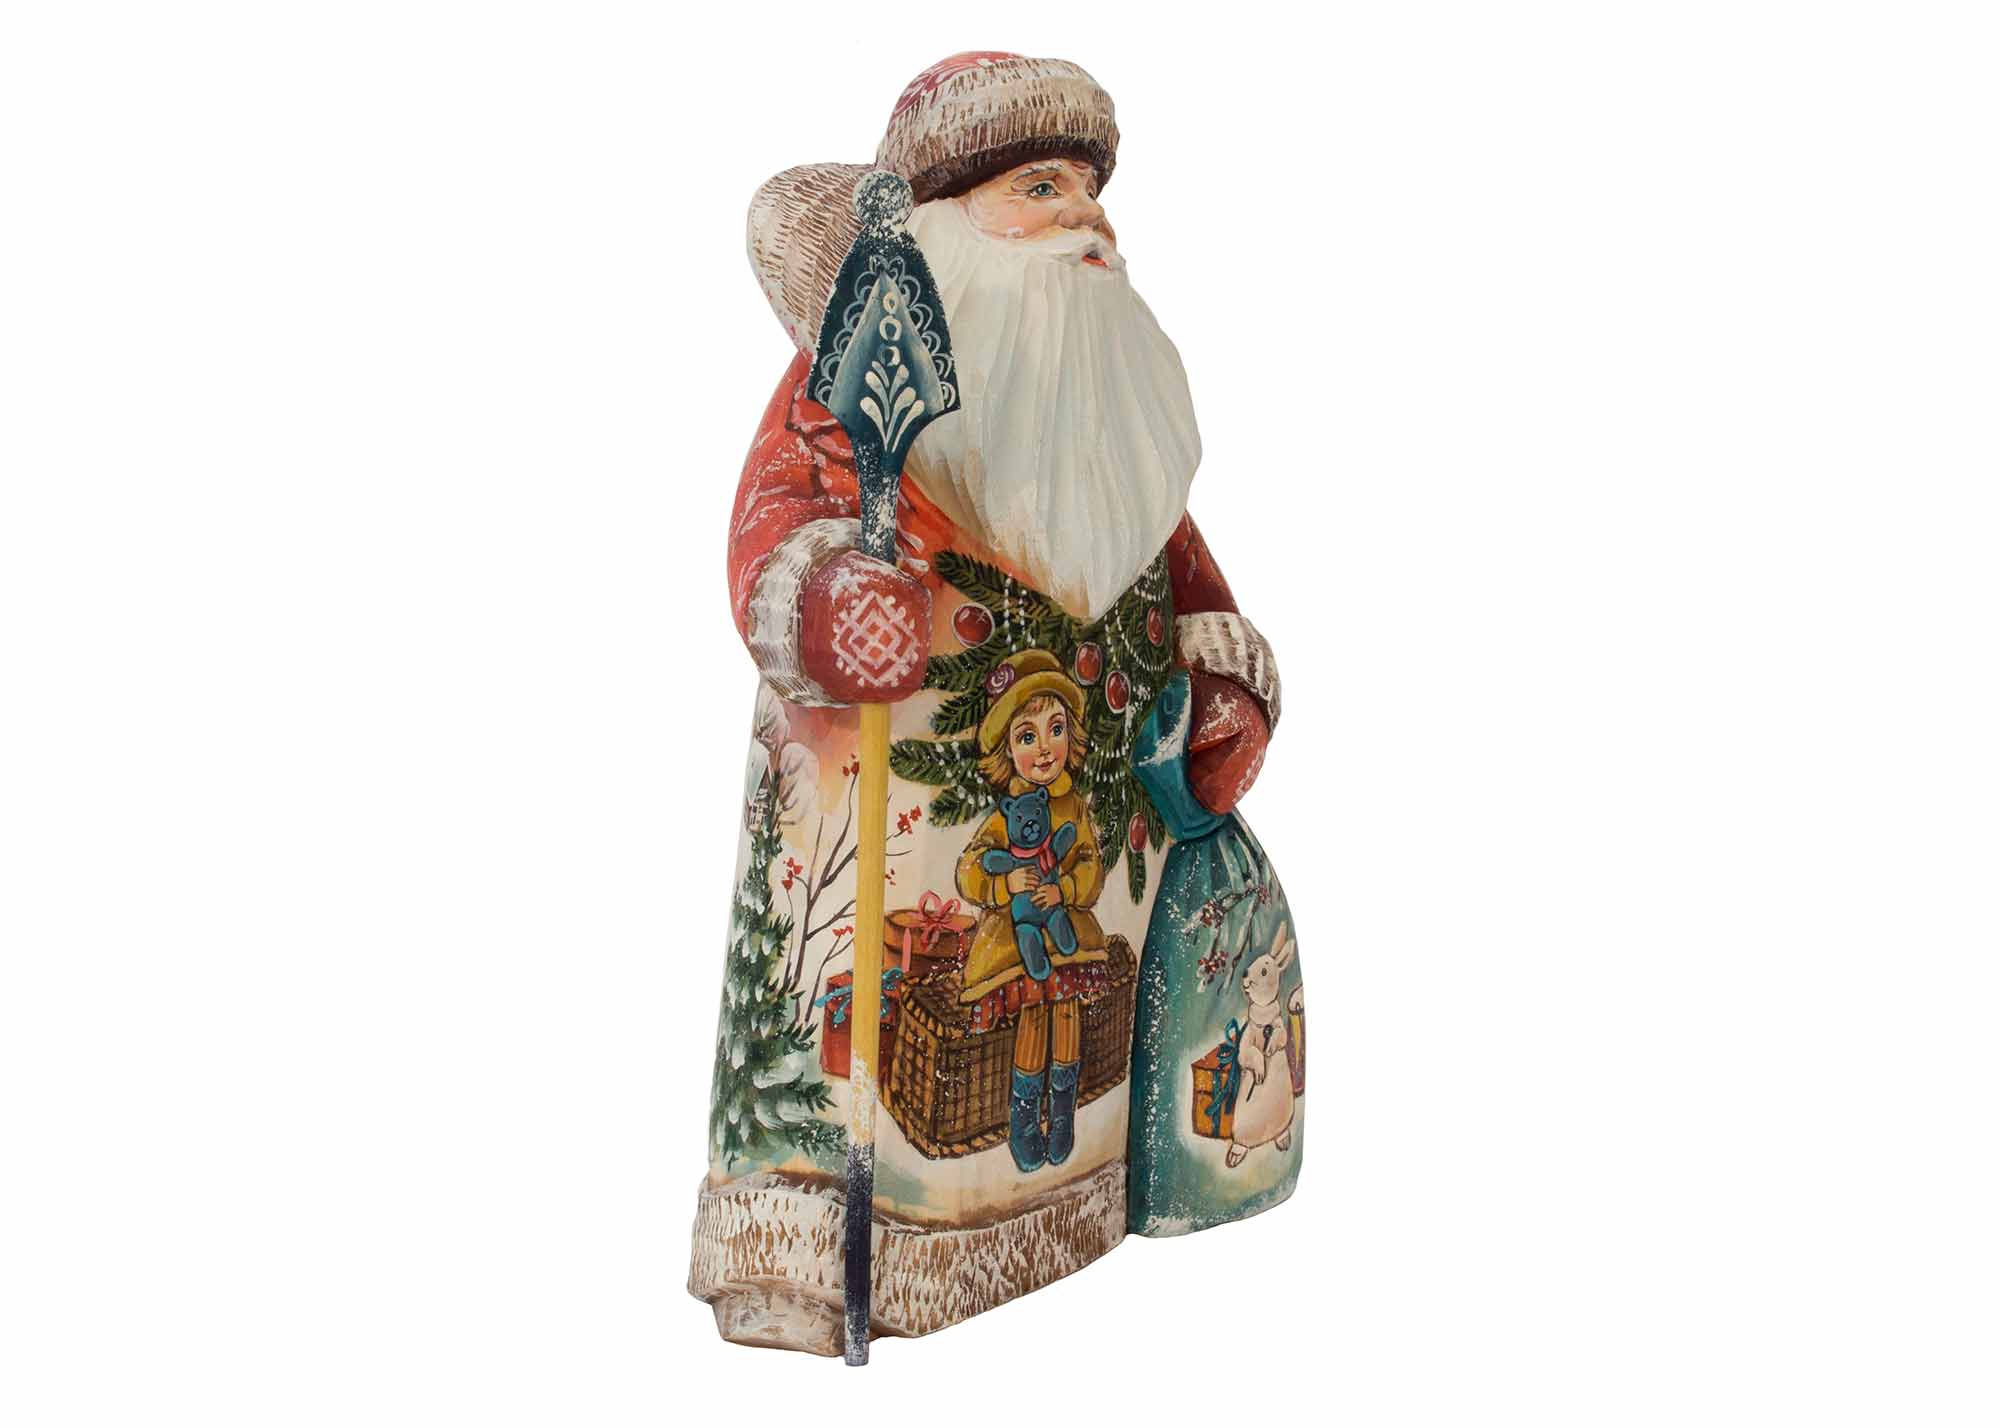 Buy Carved Santa by Nikita w/ Sack 11" at GoldenCockerel.com